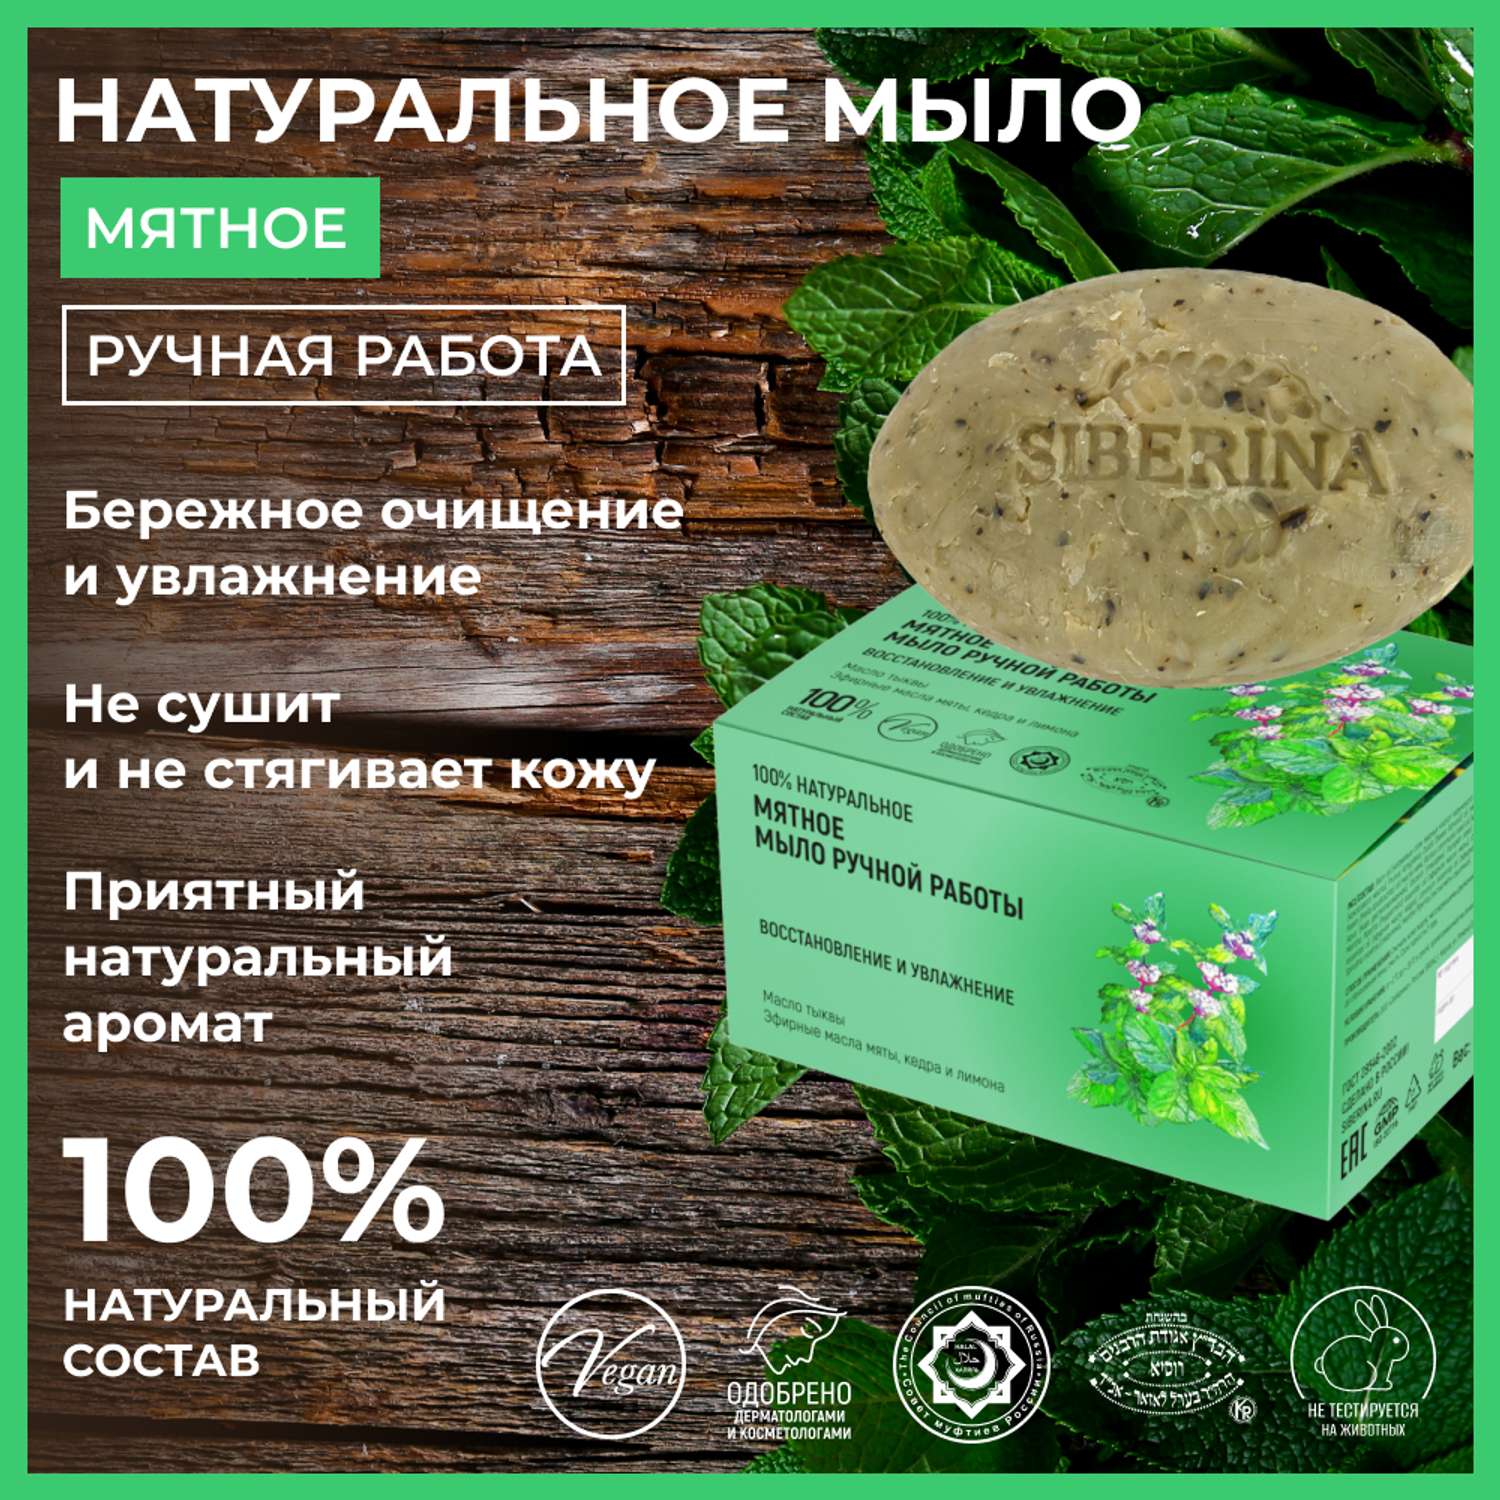 Мыло Siberina натуральное «Мятное» ручной работы восстановление и увлажнение 90 г - фото 2